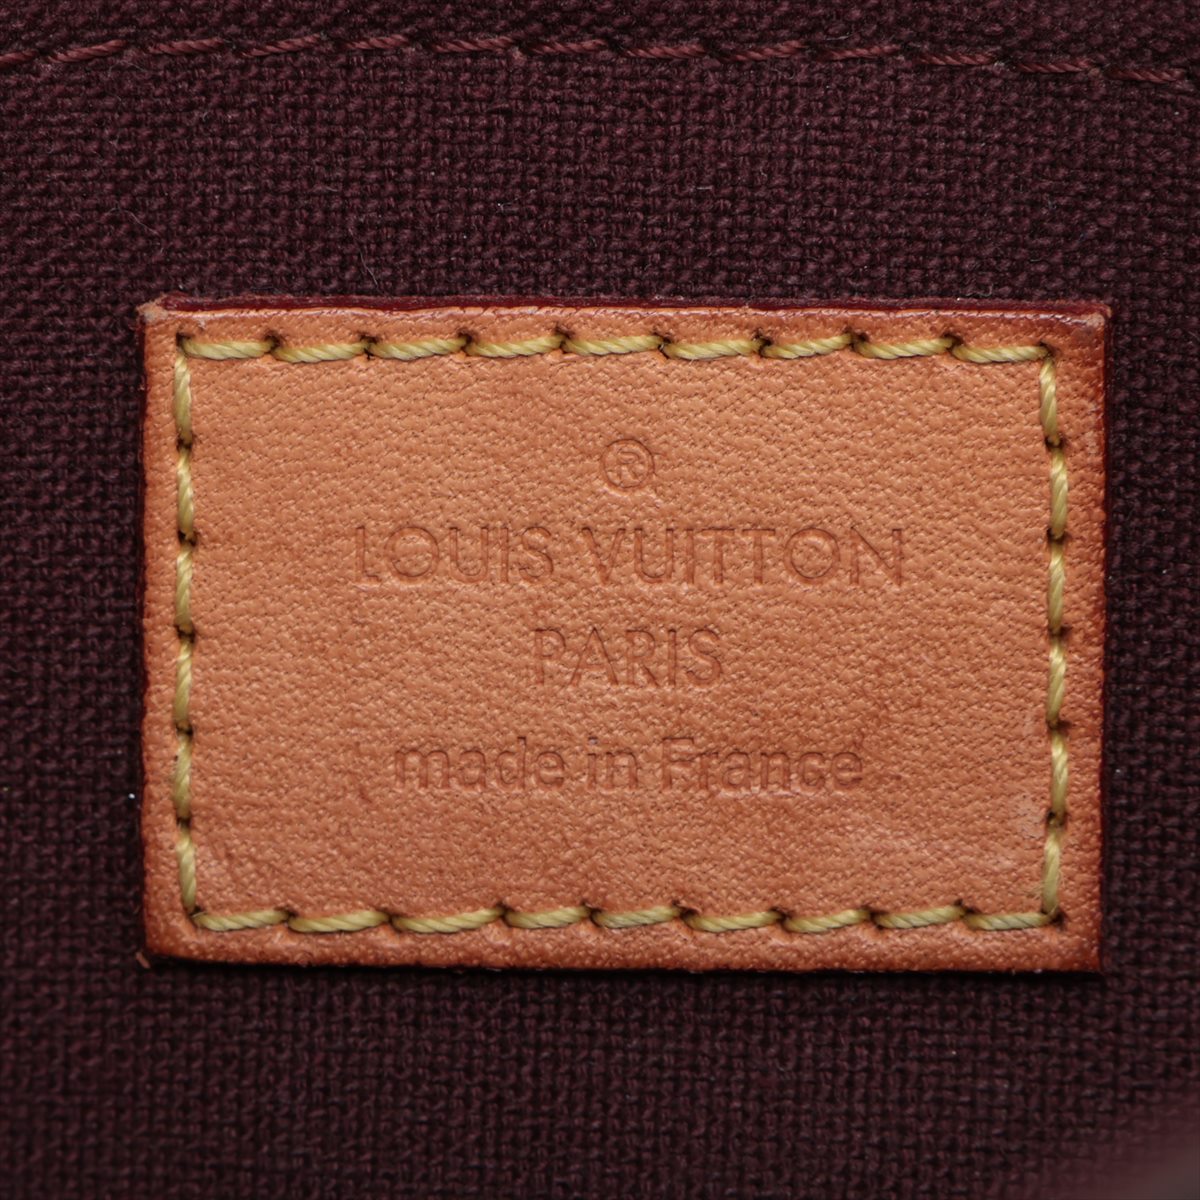 Louis Vuitton Monogram Feobolit PM M40717